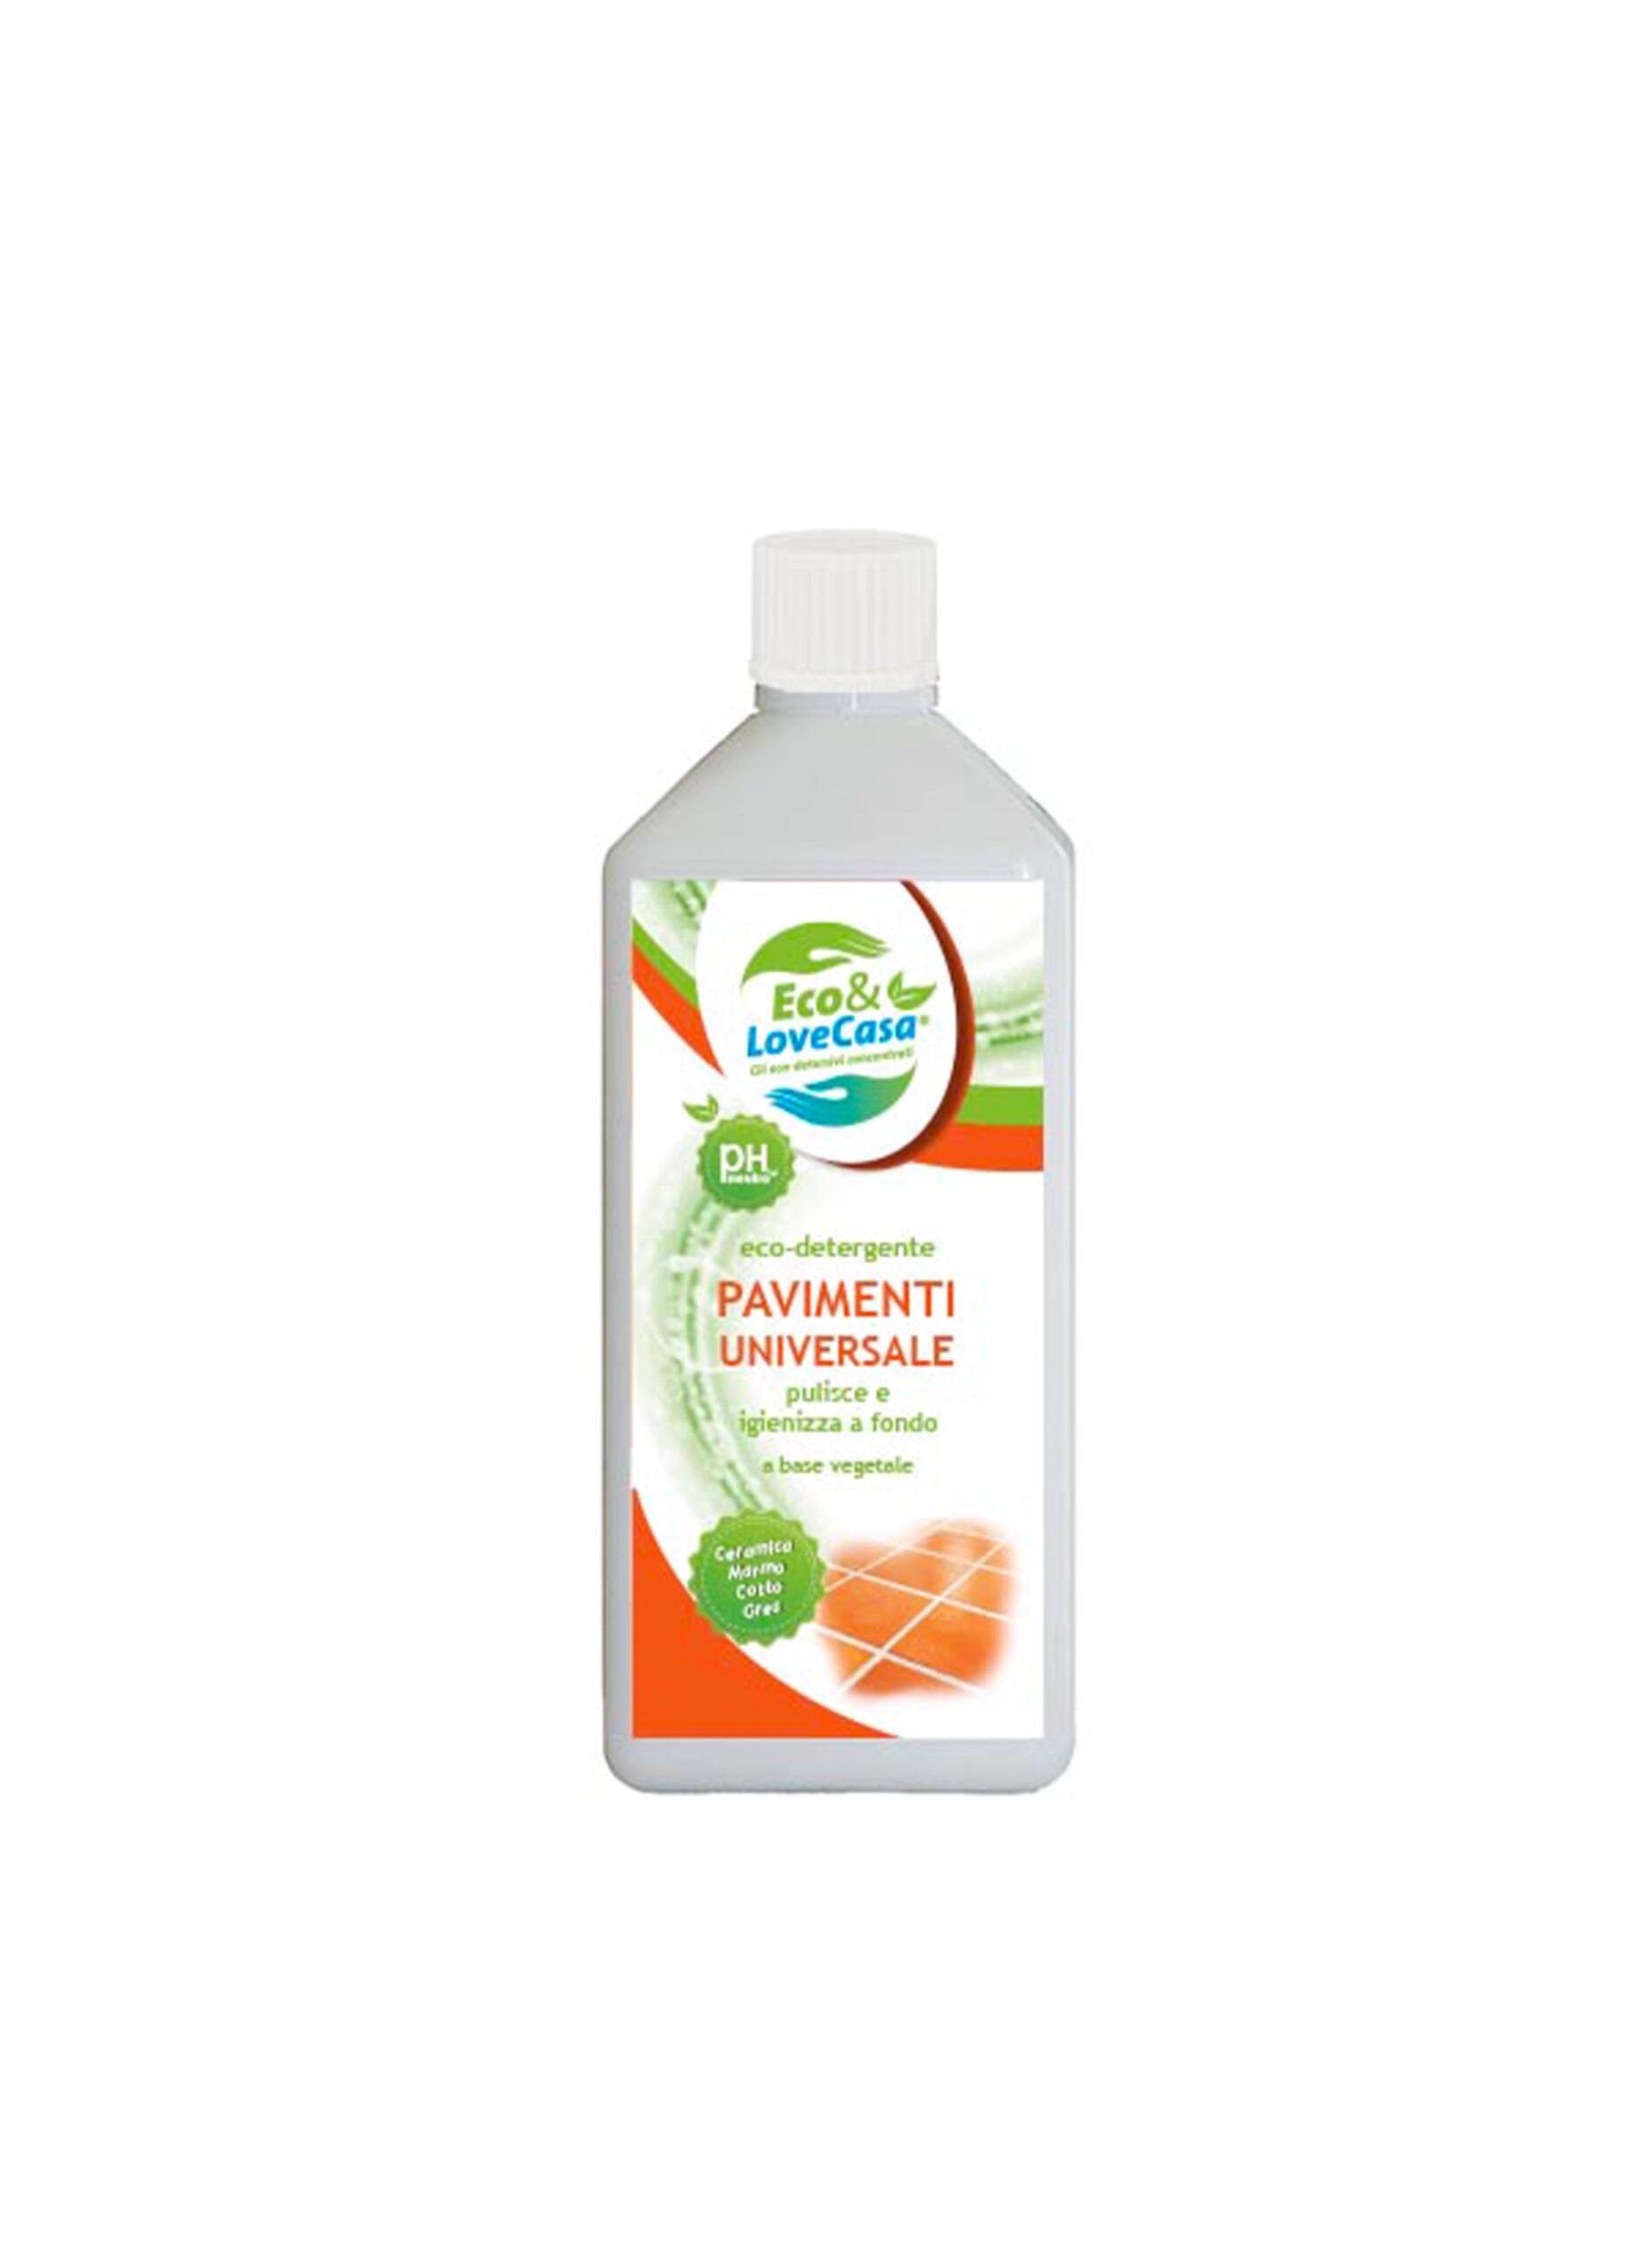 Eco detergente PAVIMENTI UNIVERSALE - 1 Kg - Naturalmio